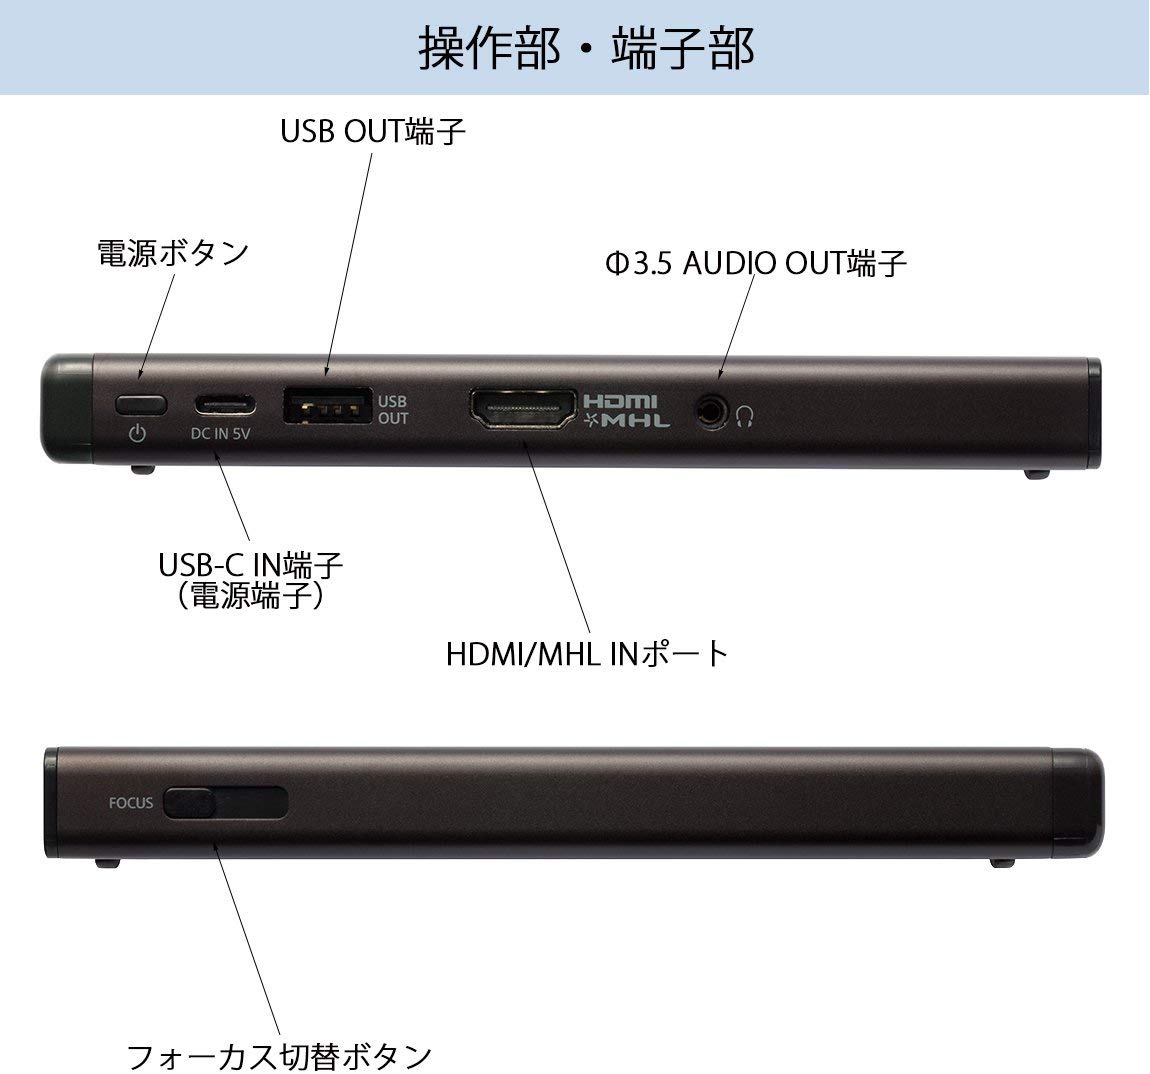 ソニー SONY モバイルプロジェクター USB給電機能搭載 MP-CD1 